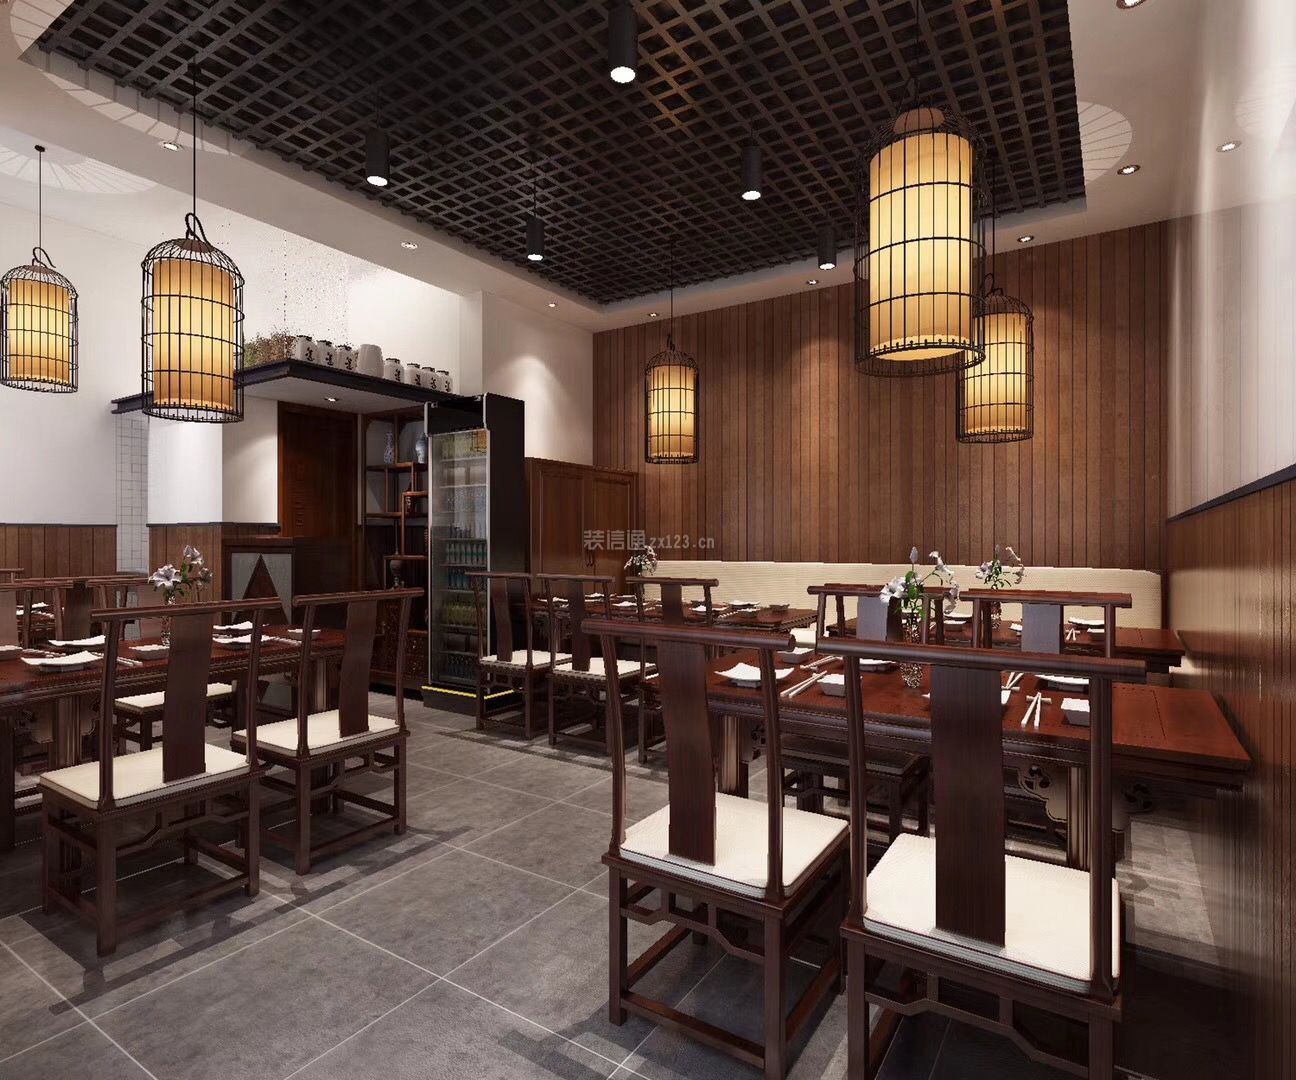 2020中式餐馆设计图片 中式餐馆图片